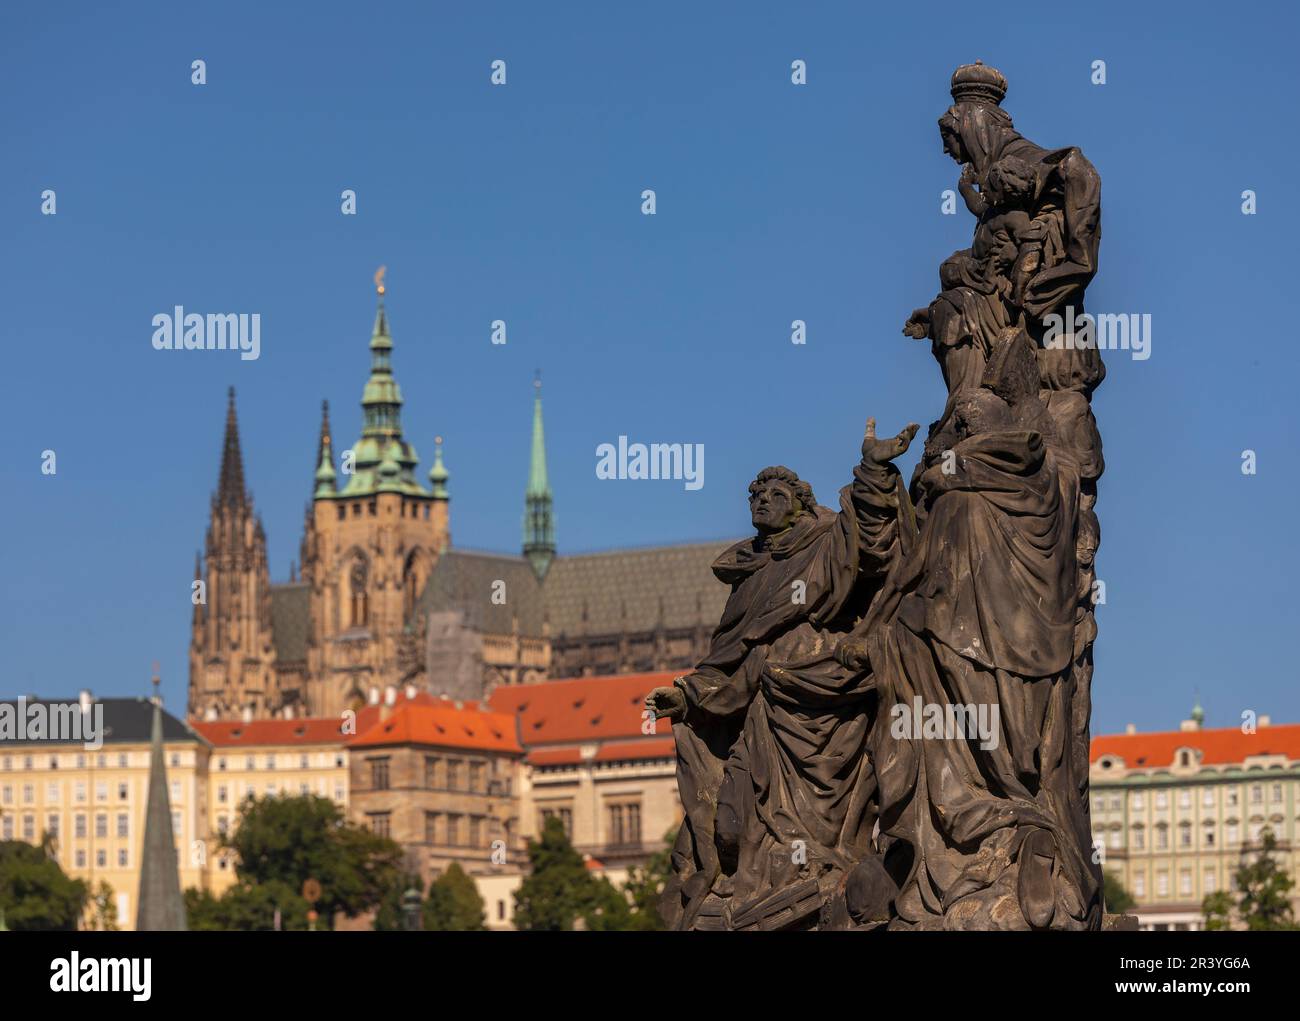 PRAG, TSCHECHISCHE REPUBLIK, EUROPA - Prager Skyline mit Statue auf Karlsbrücke und St. Veitsdom in der Ferne. Stockfoto